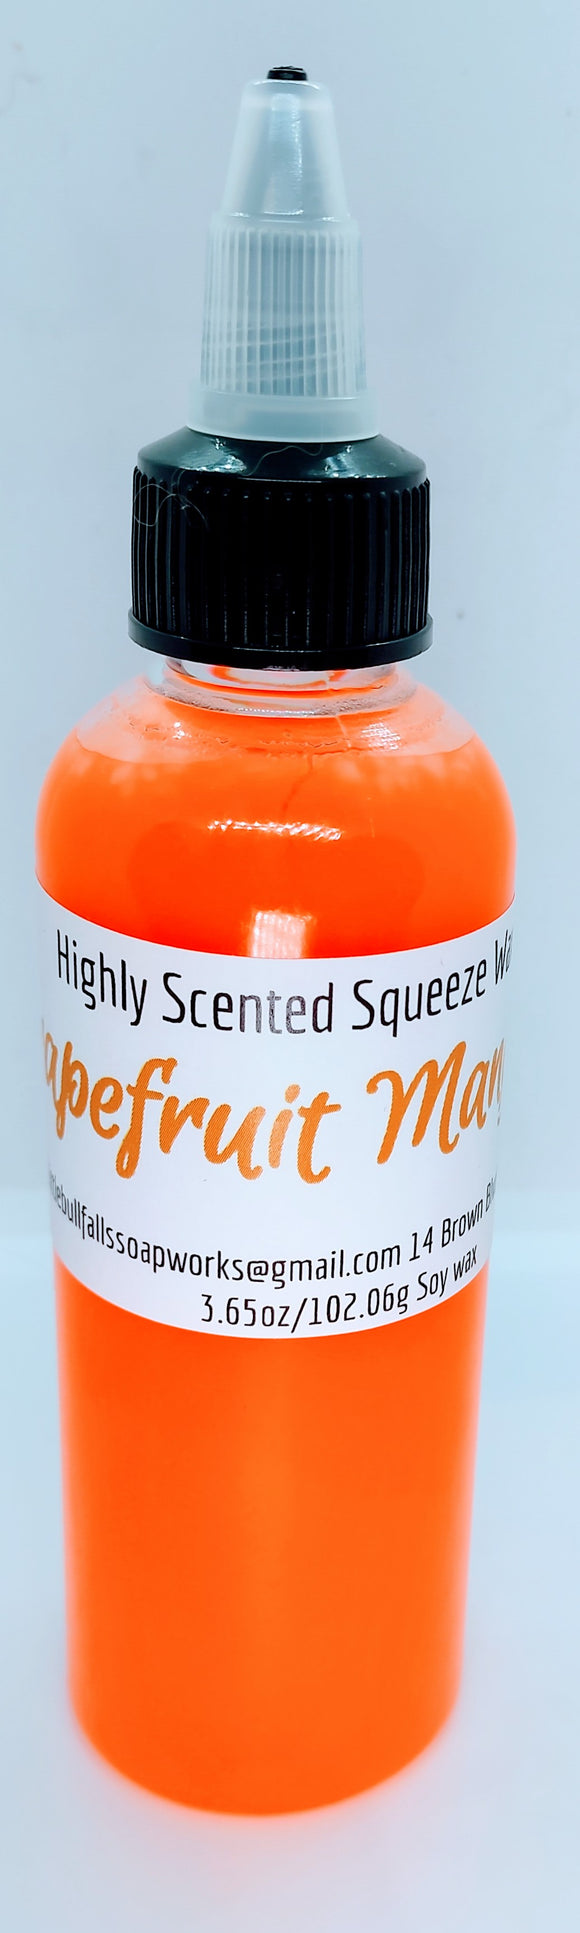 Grapefruit & Mangosteen Squeeze Wax